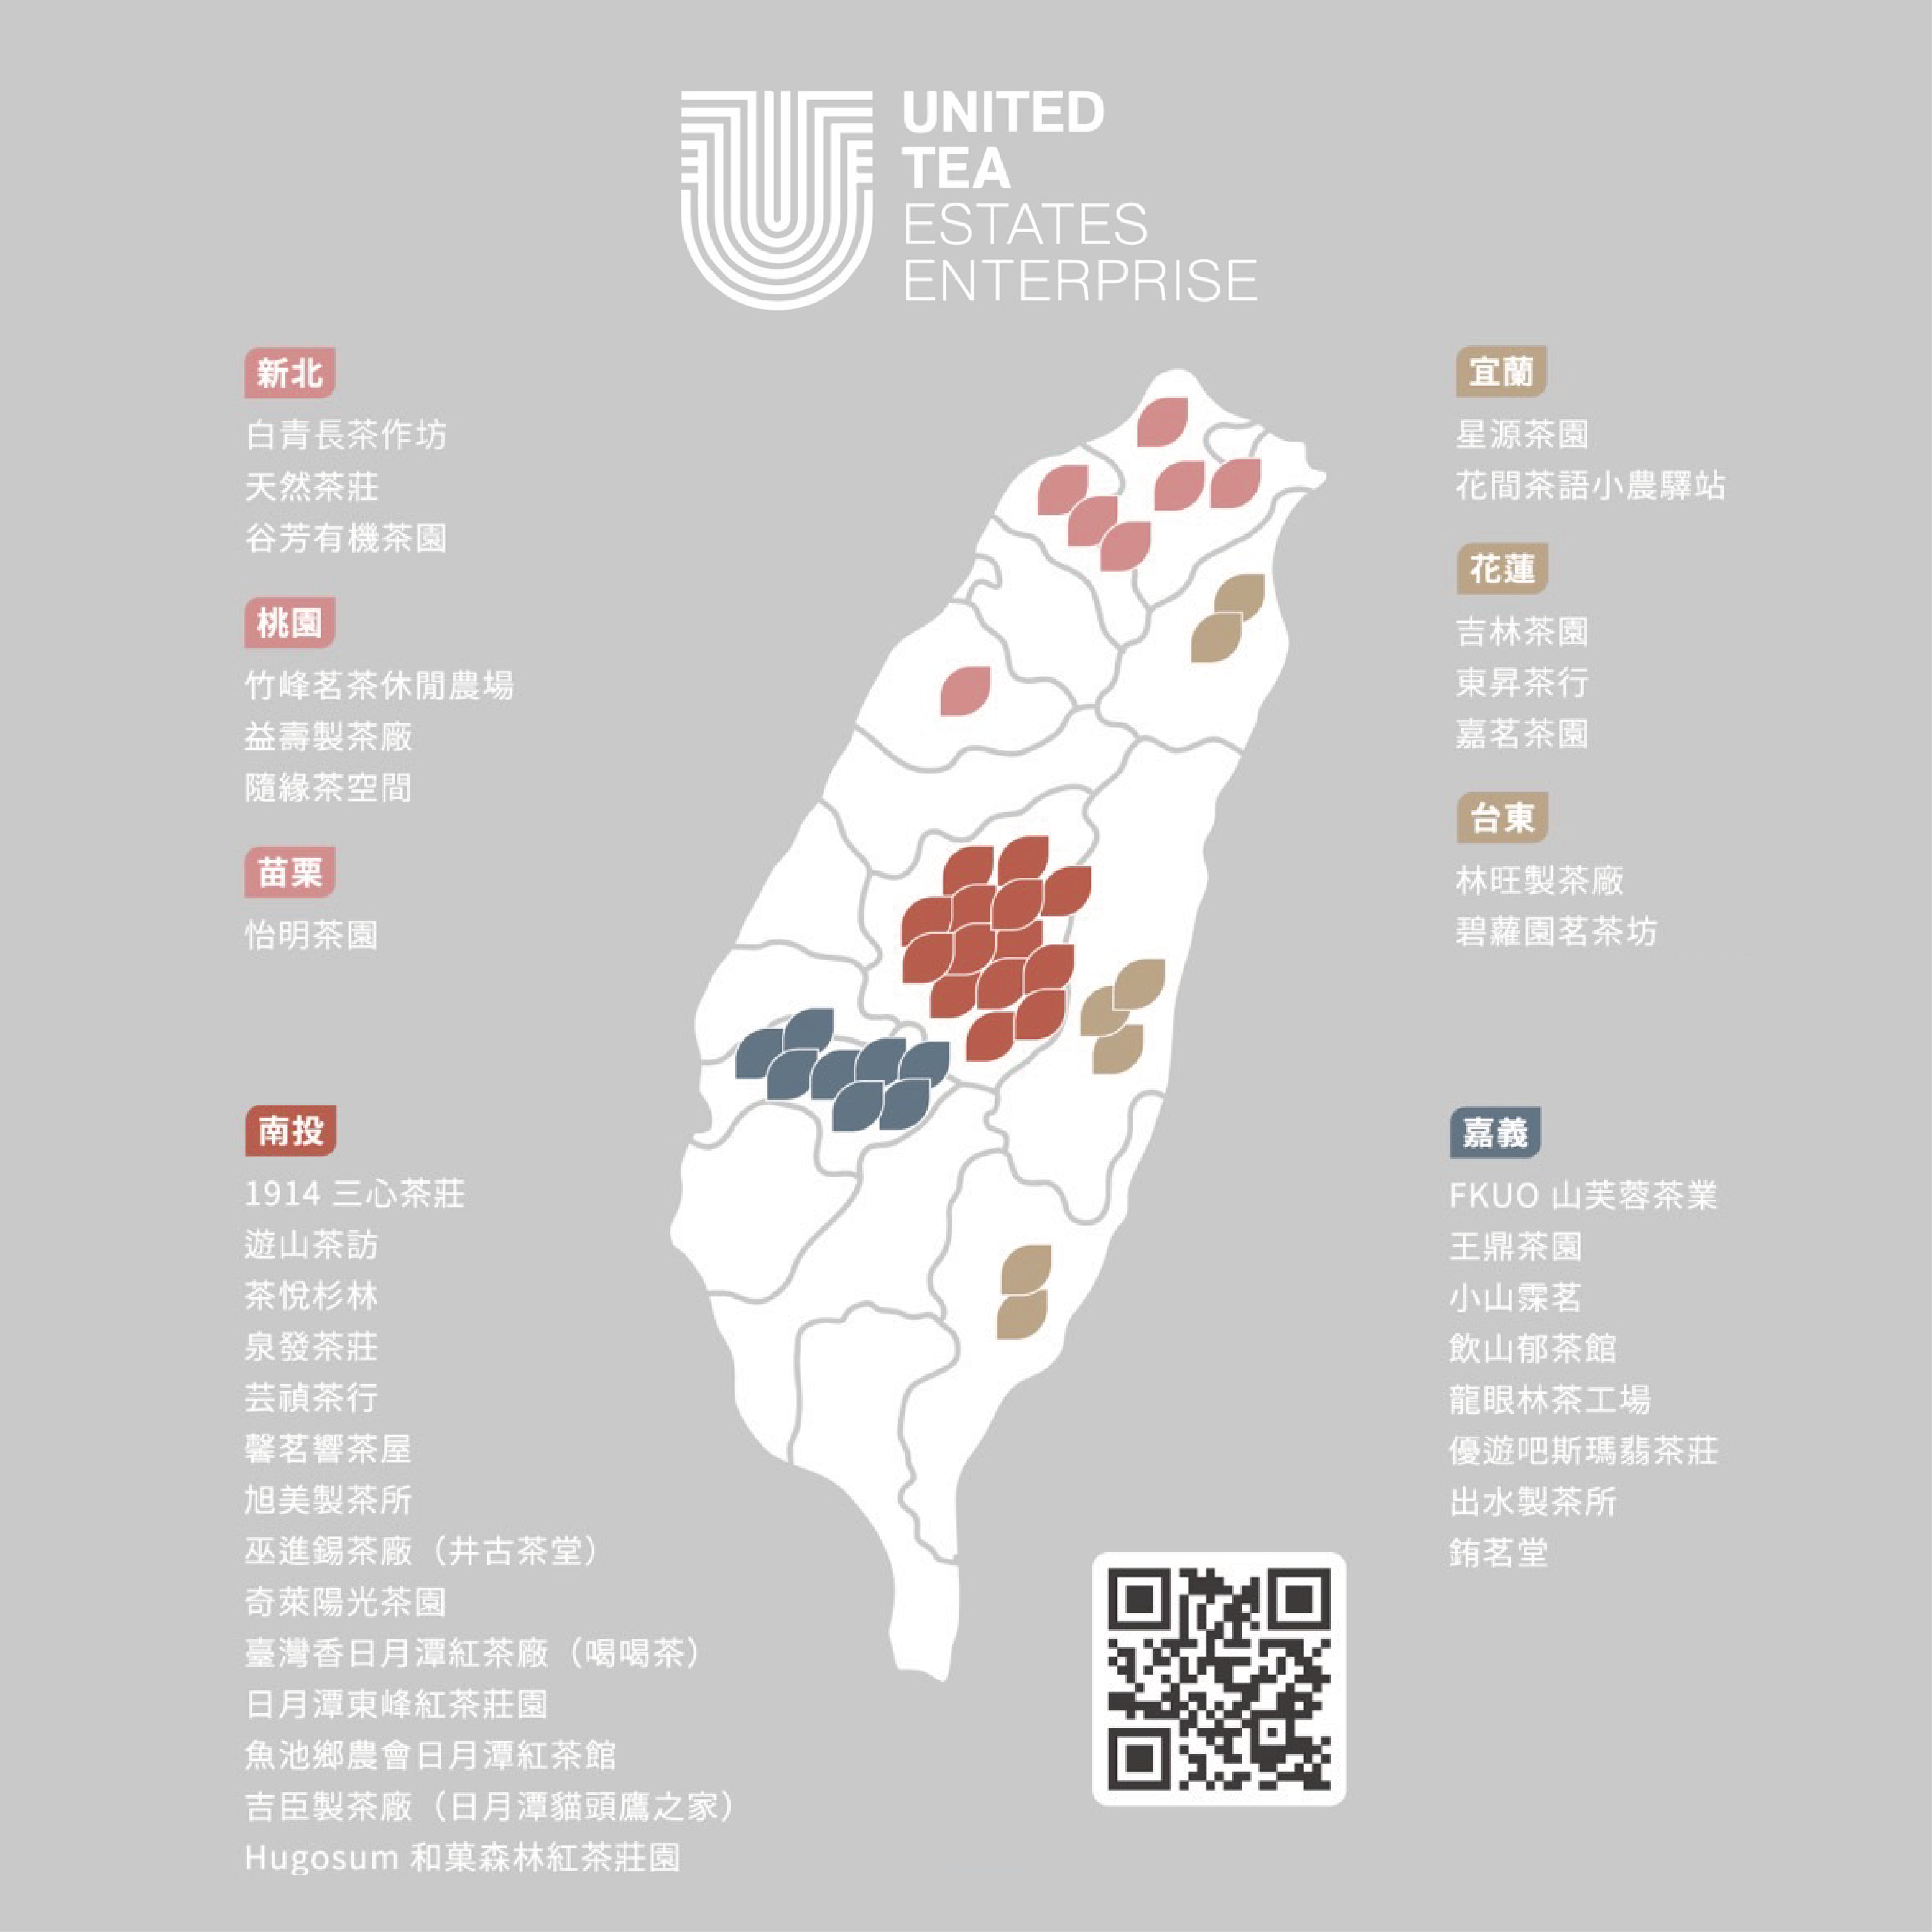 全臺8縣市、36家亮點茶莊分布地圖，邀請走訪亮點茶莊。